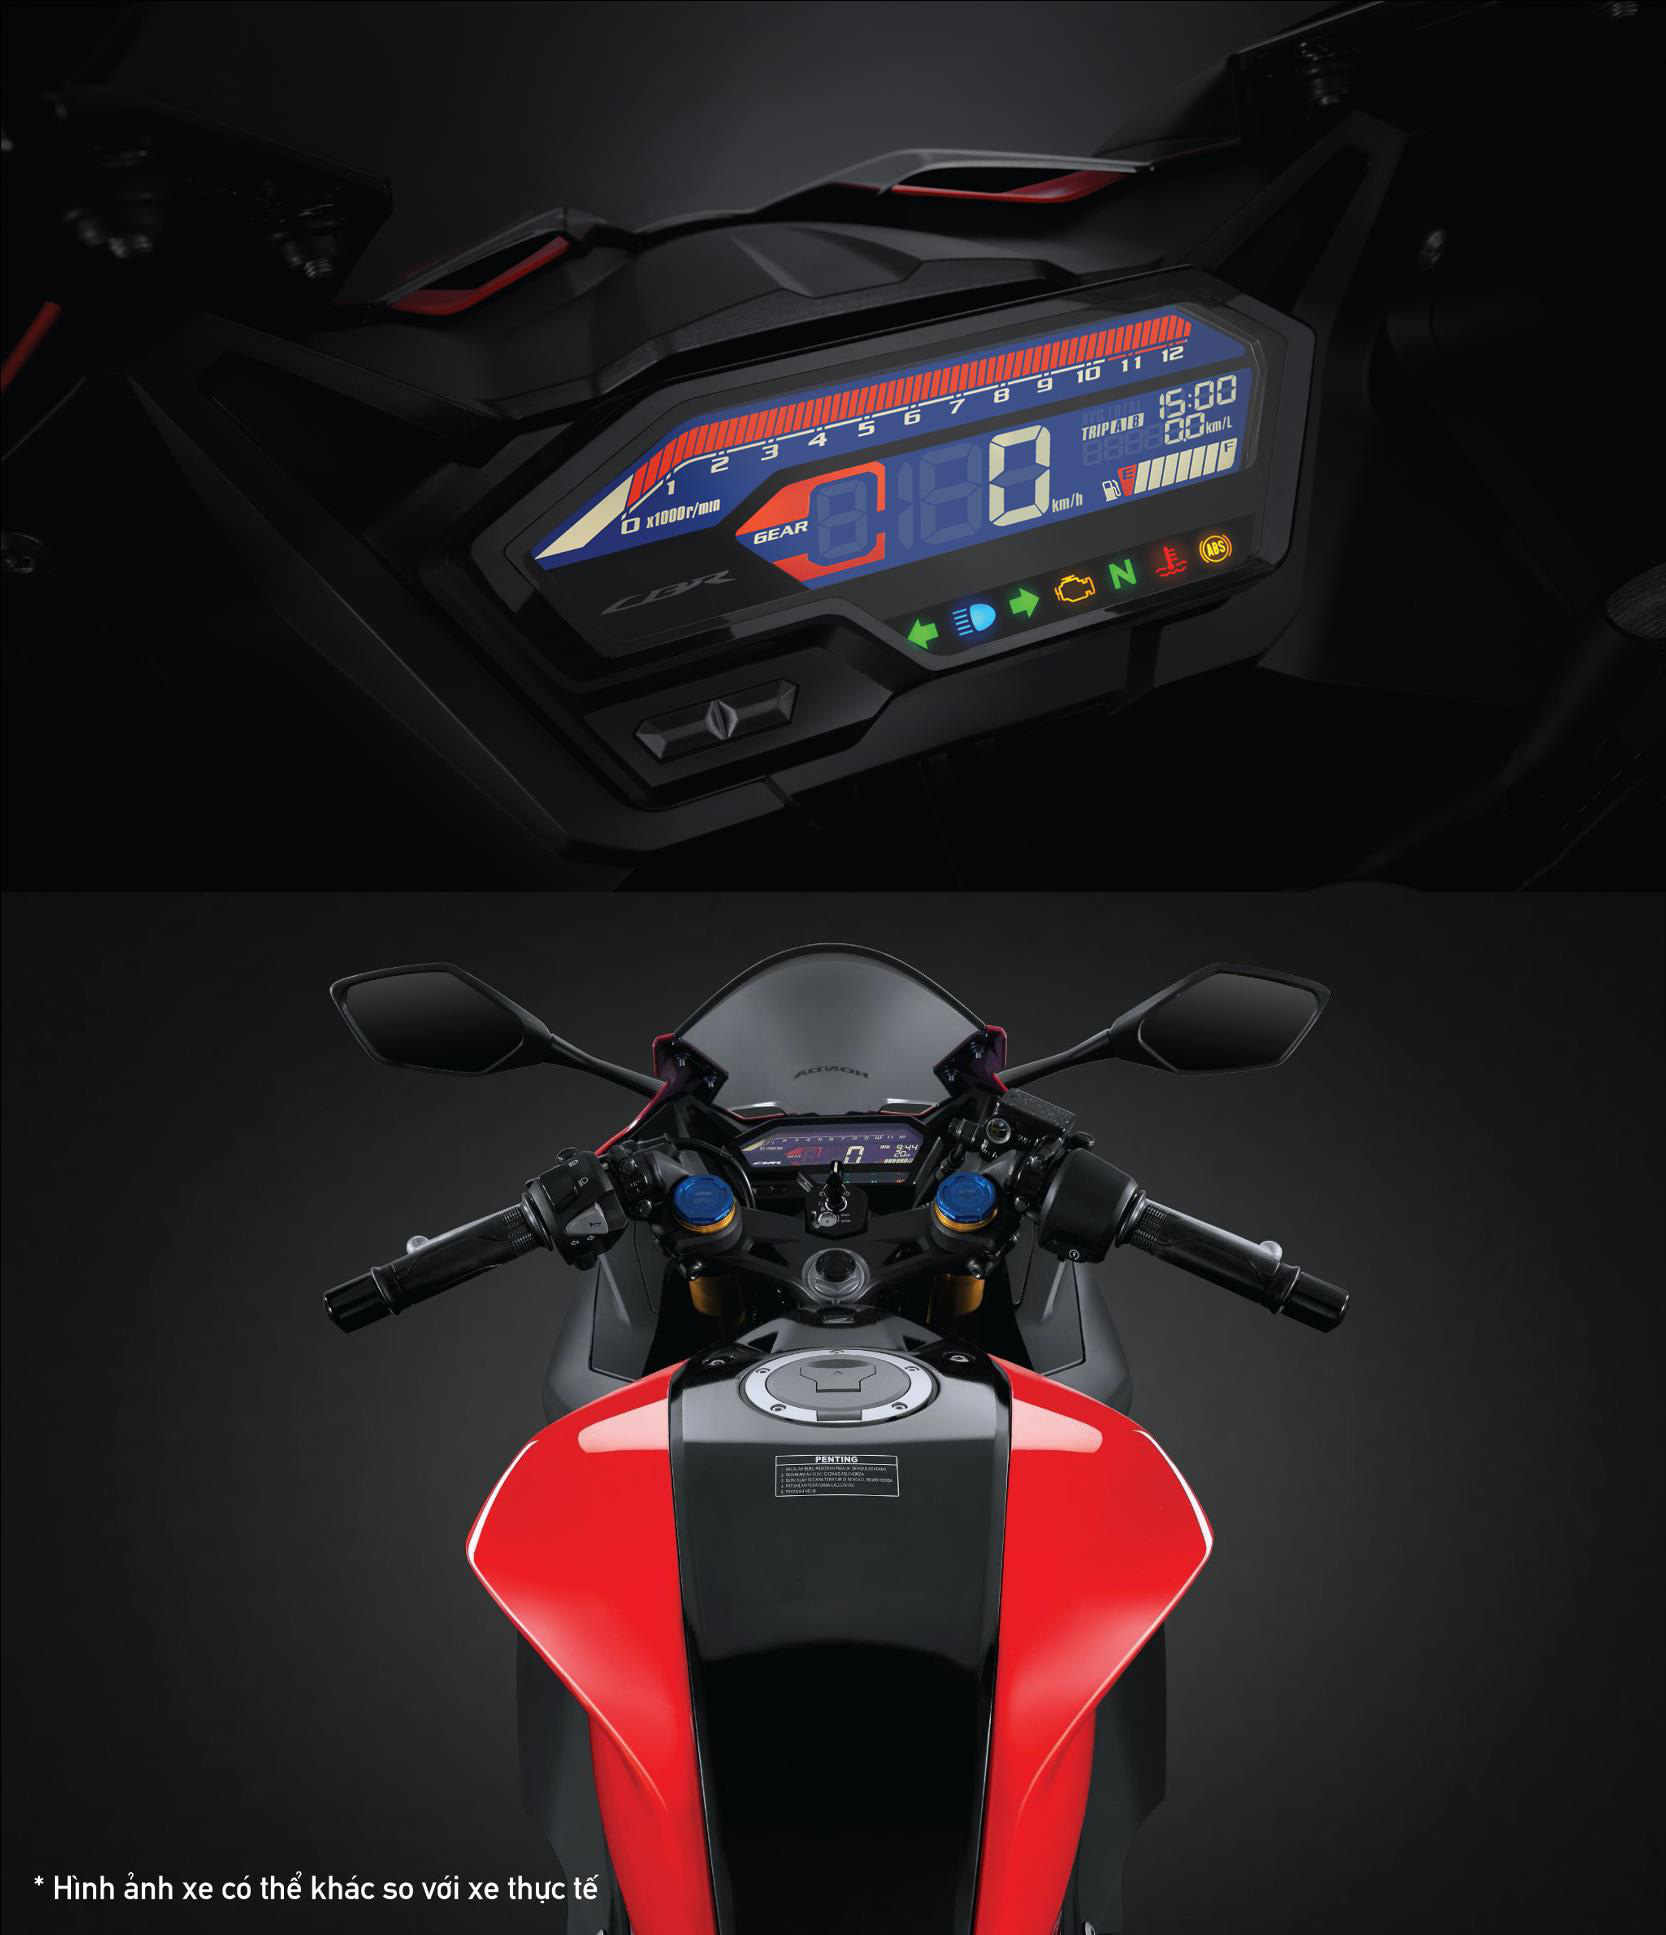 Honda CBR150R 2021: Motor thể thao hấp dẫn bậc nhất phân khúc - Ảnh 4.